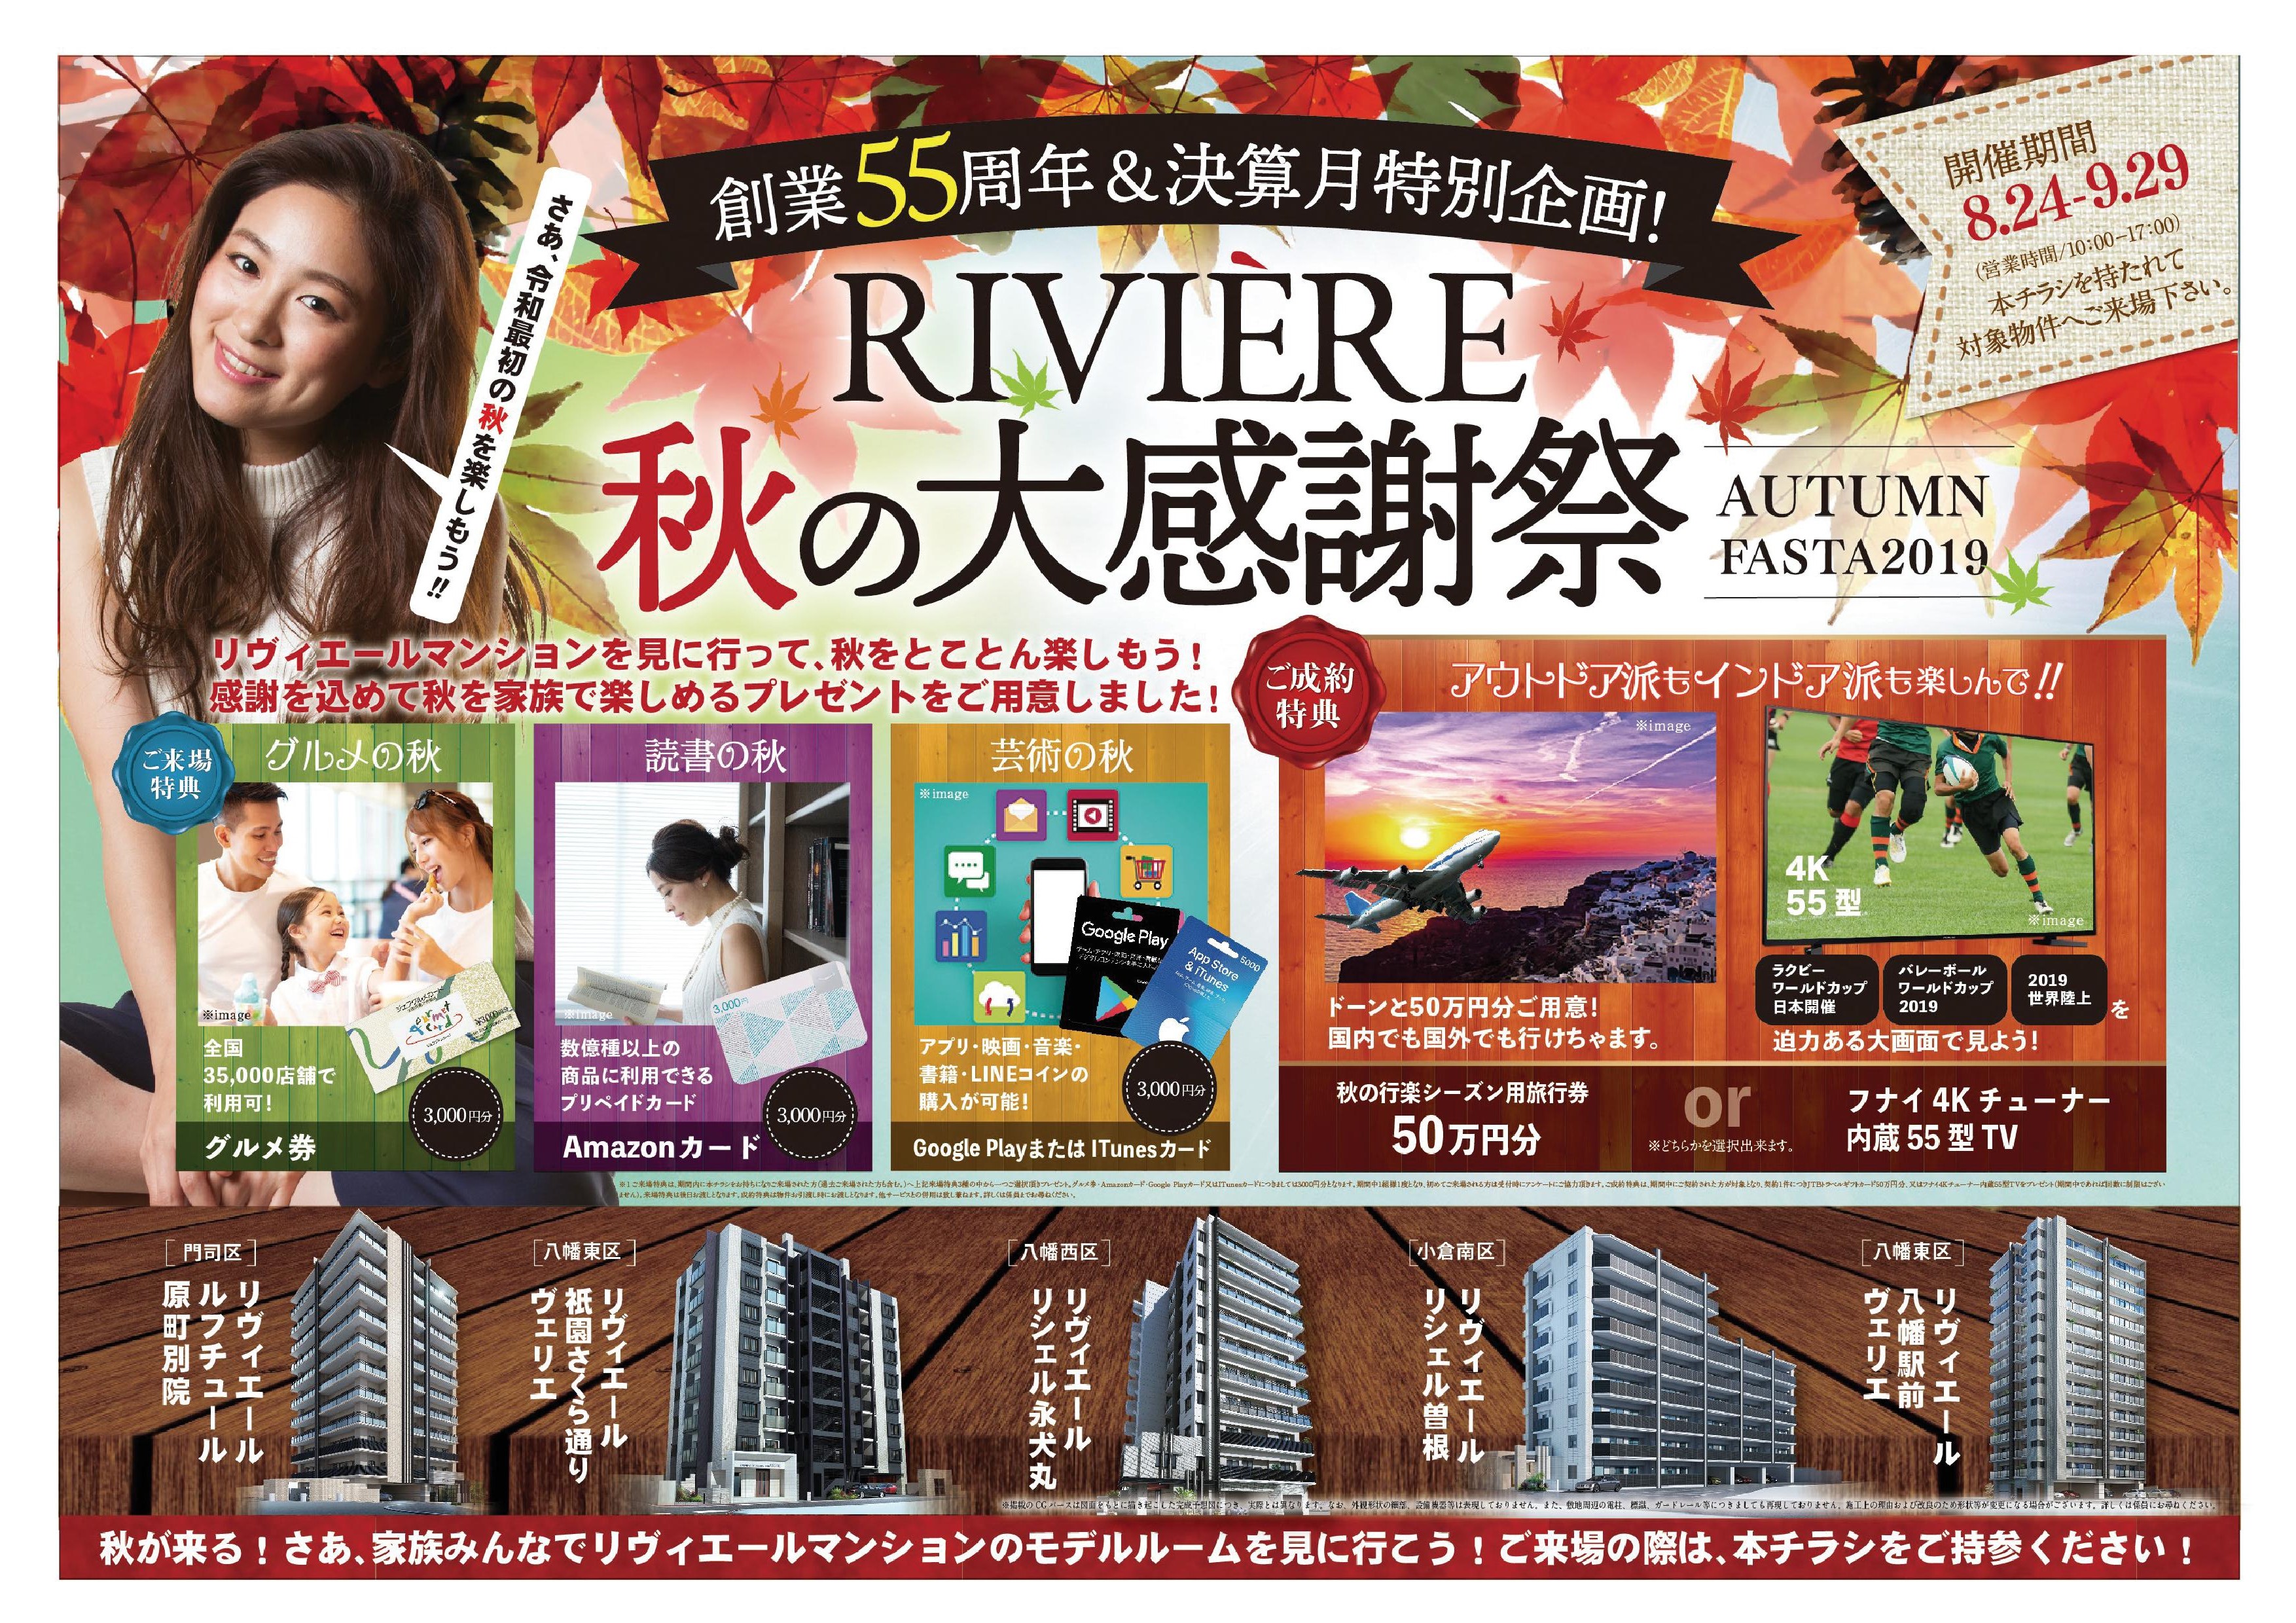 //www.riviere.gr.jp/info/images/%E8%A1%A8.jpg